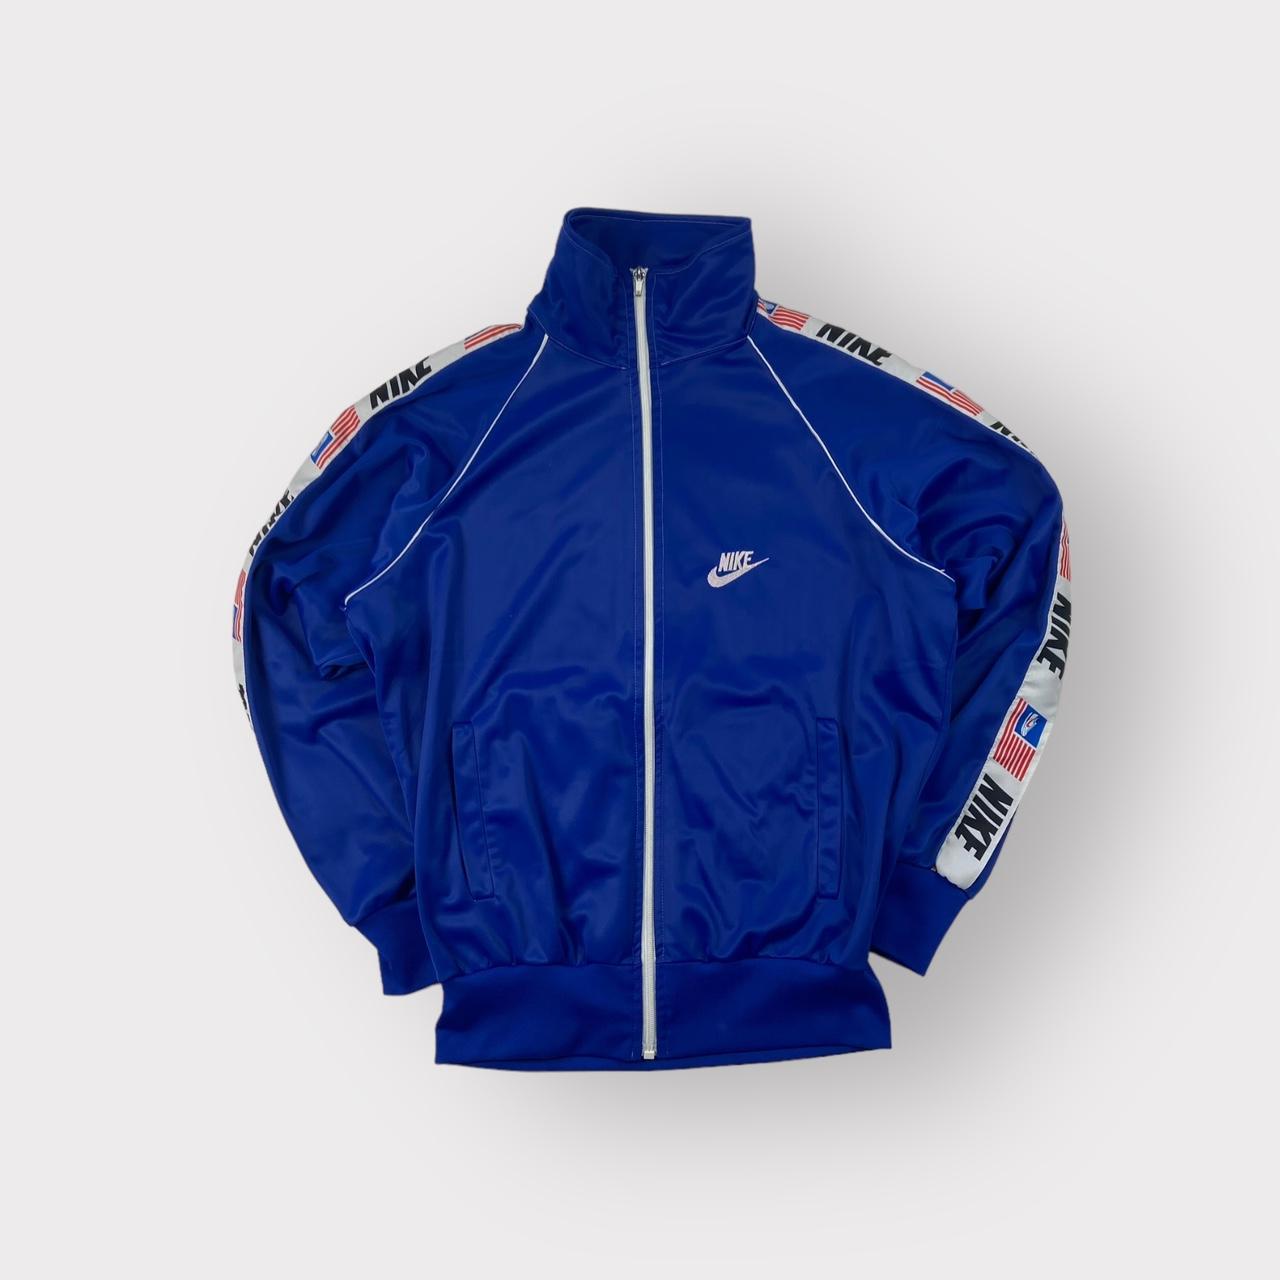 Vintage Nike Sport Jacket Condition: Excellent... - Depop